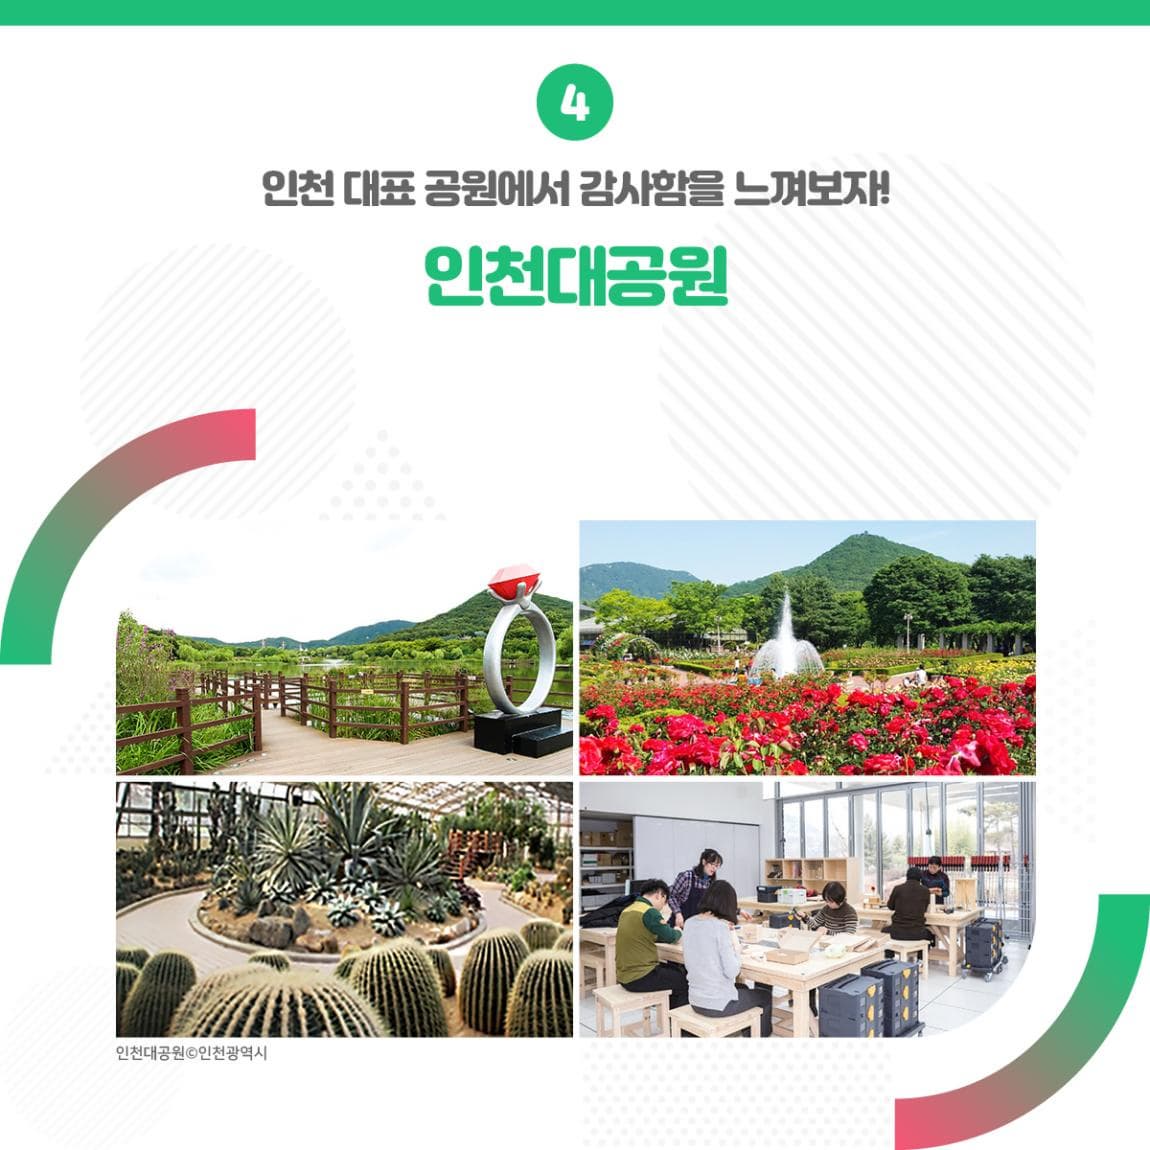 4 인천 대표 공원에서 감사함을 느껴보자!! 인천대공원 ㅣ 인천대공원 인천광역시